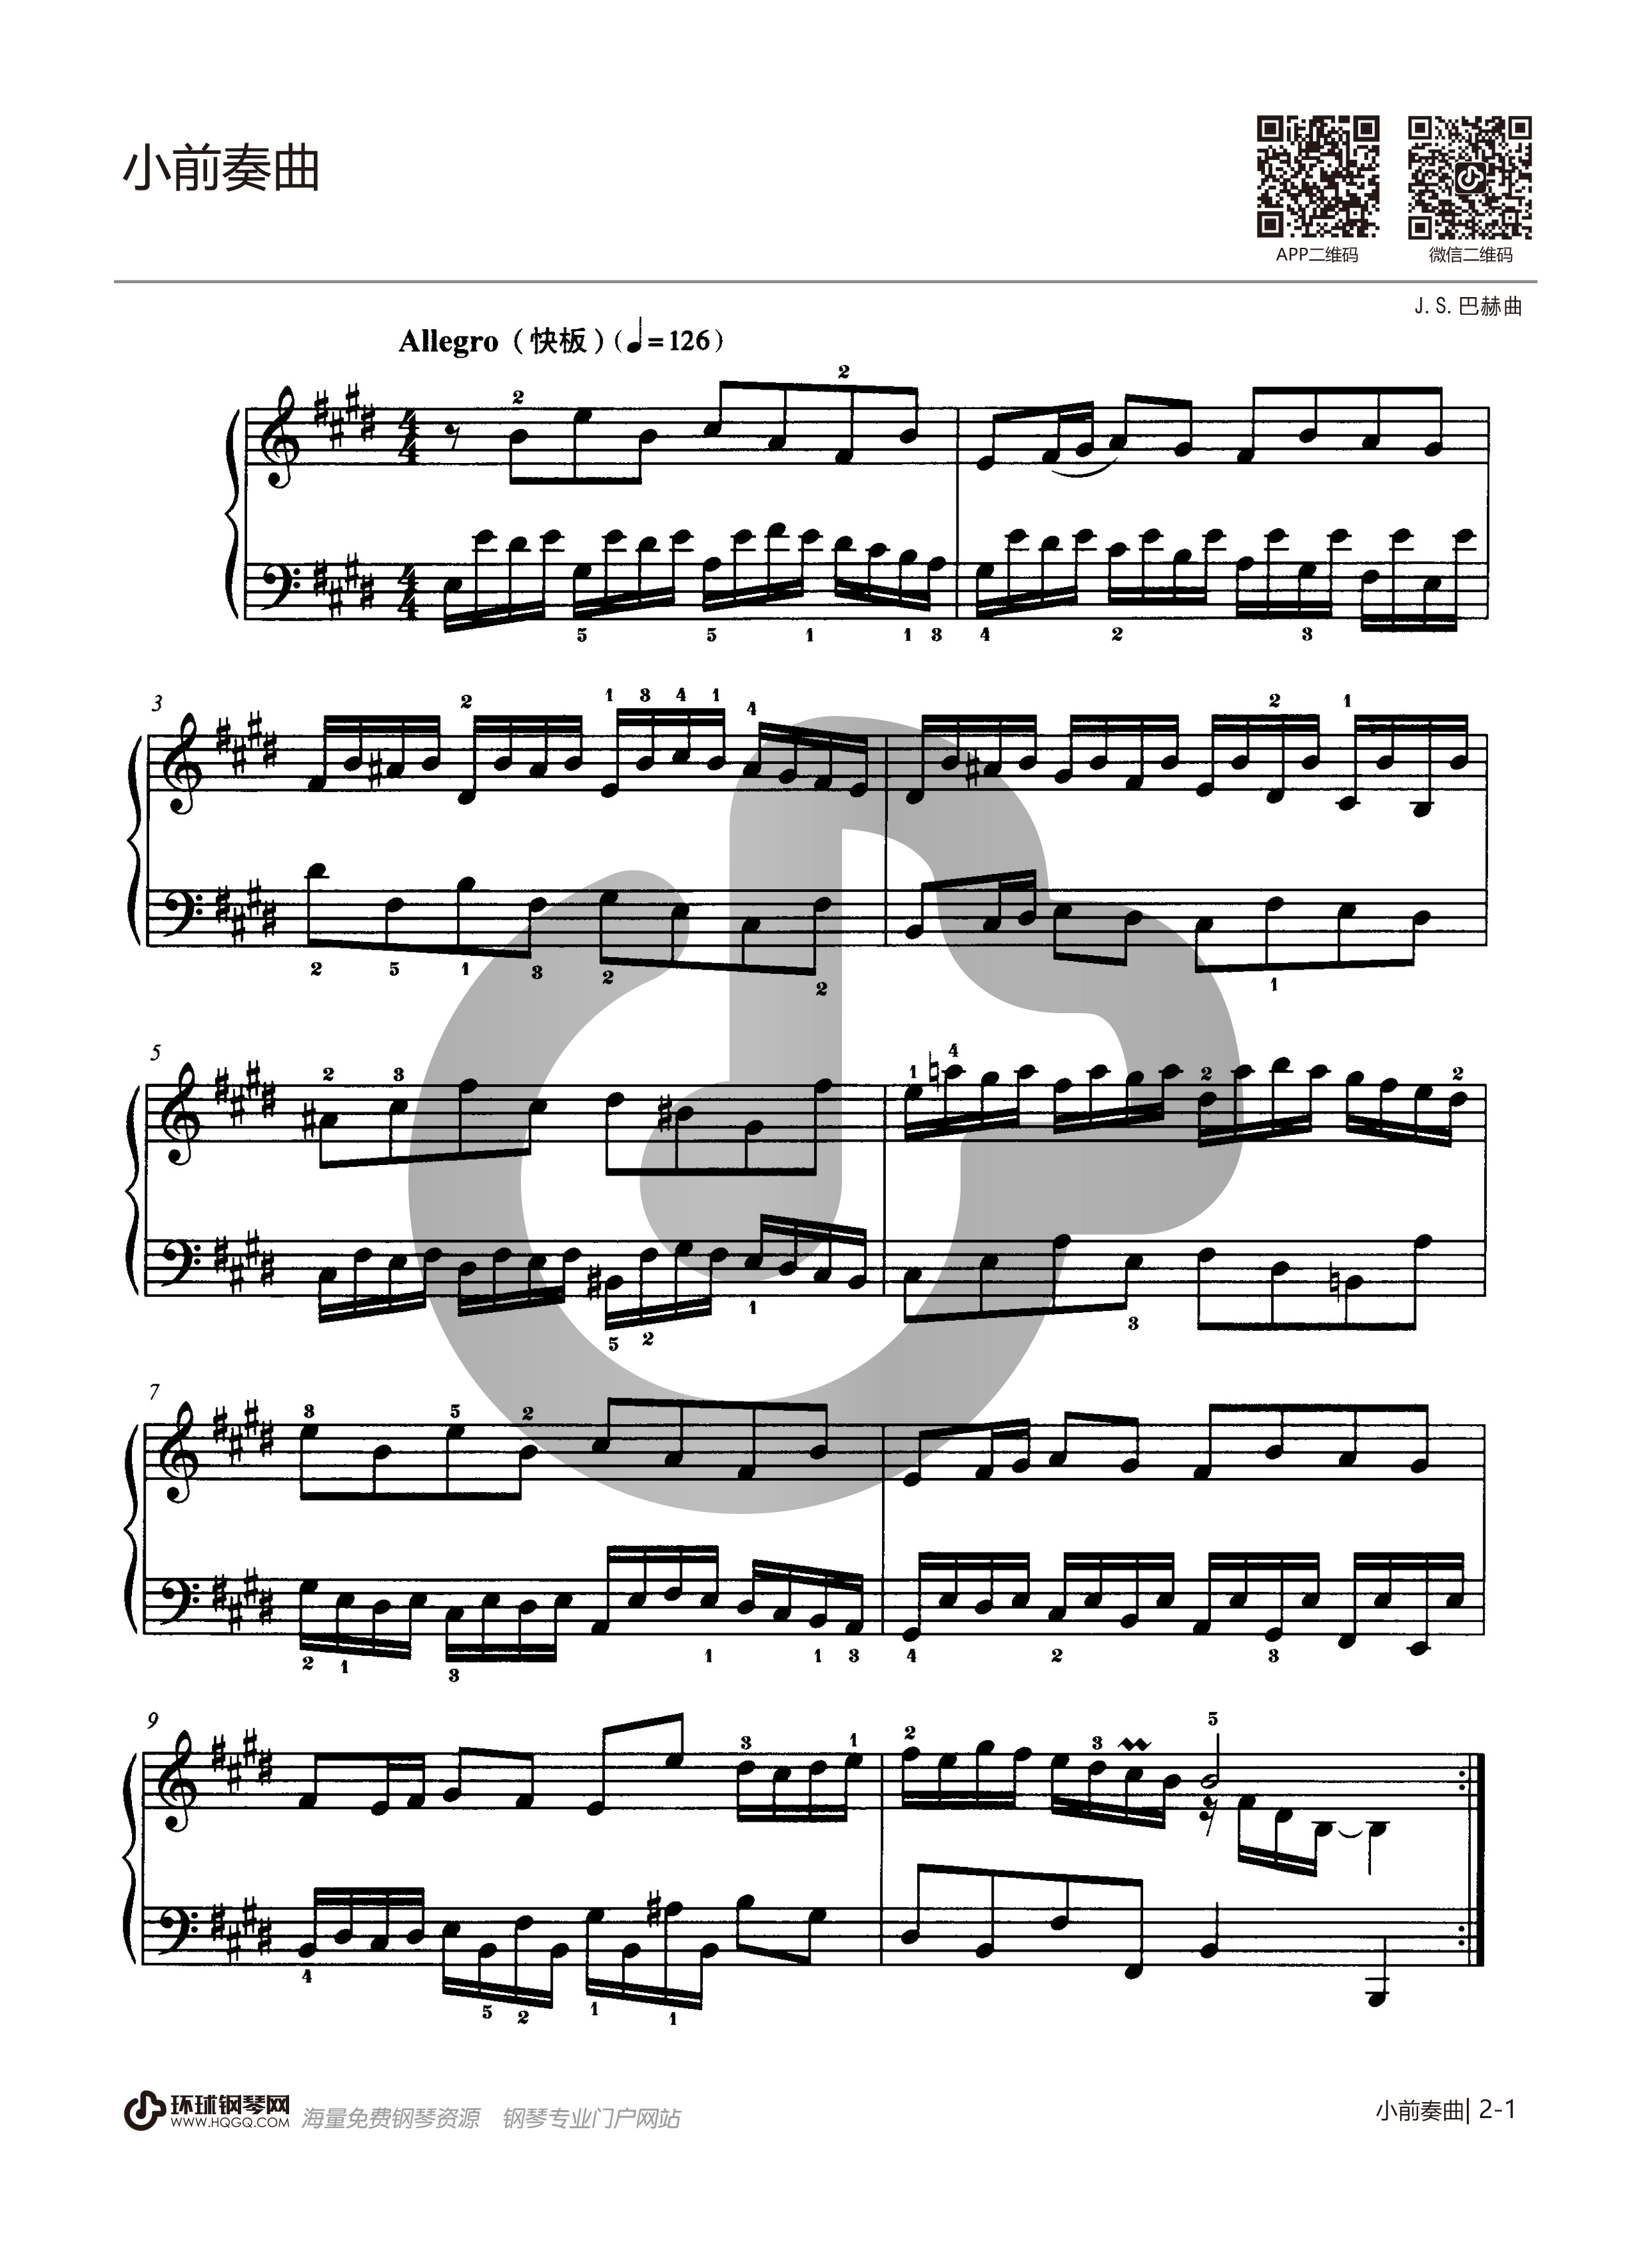 八级钢琴考级曲目第二儿童组曲的简单介绍